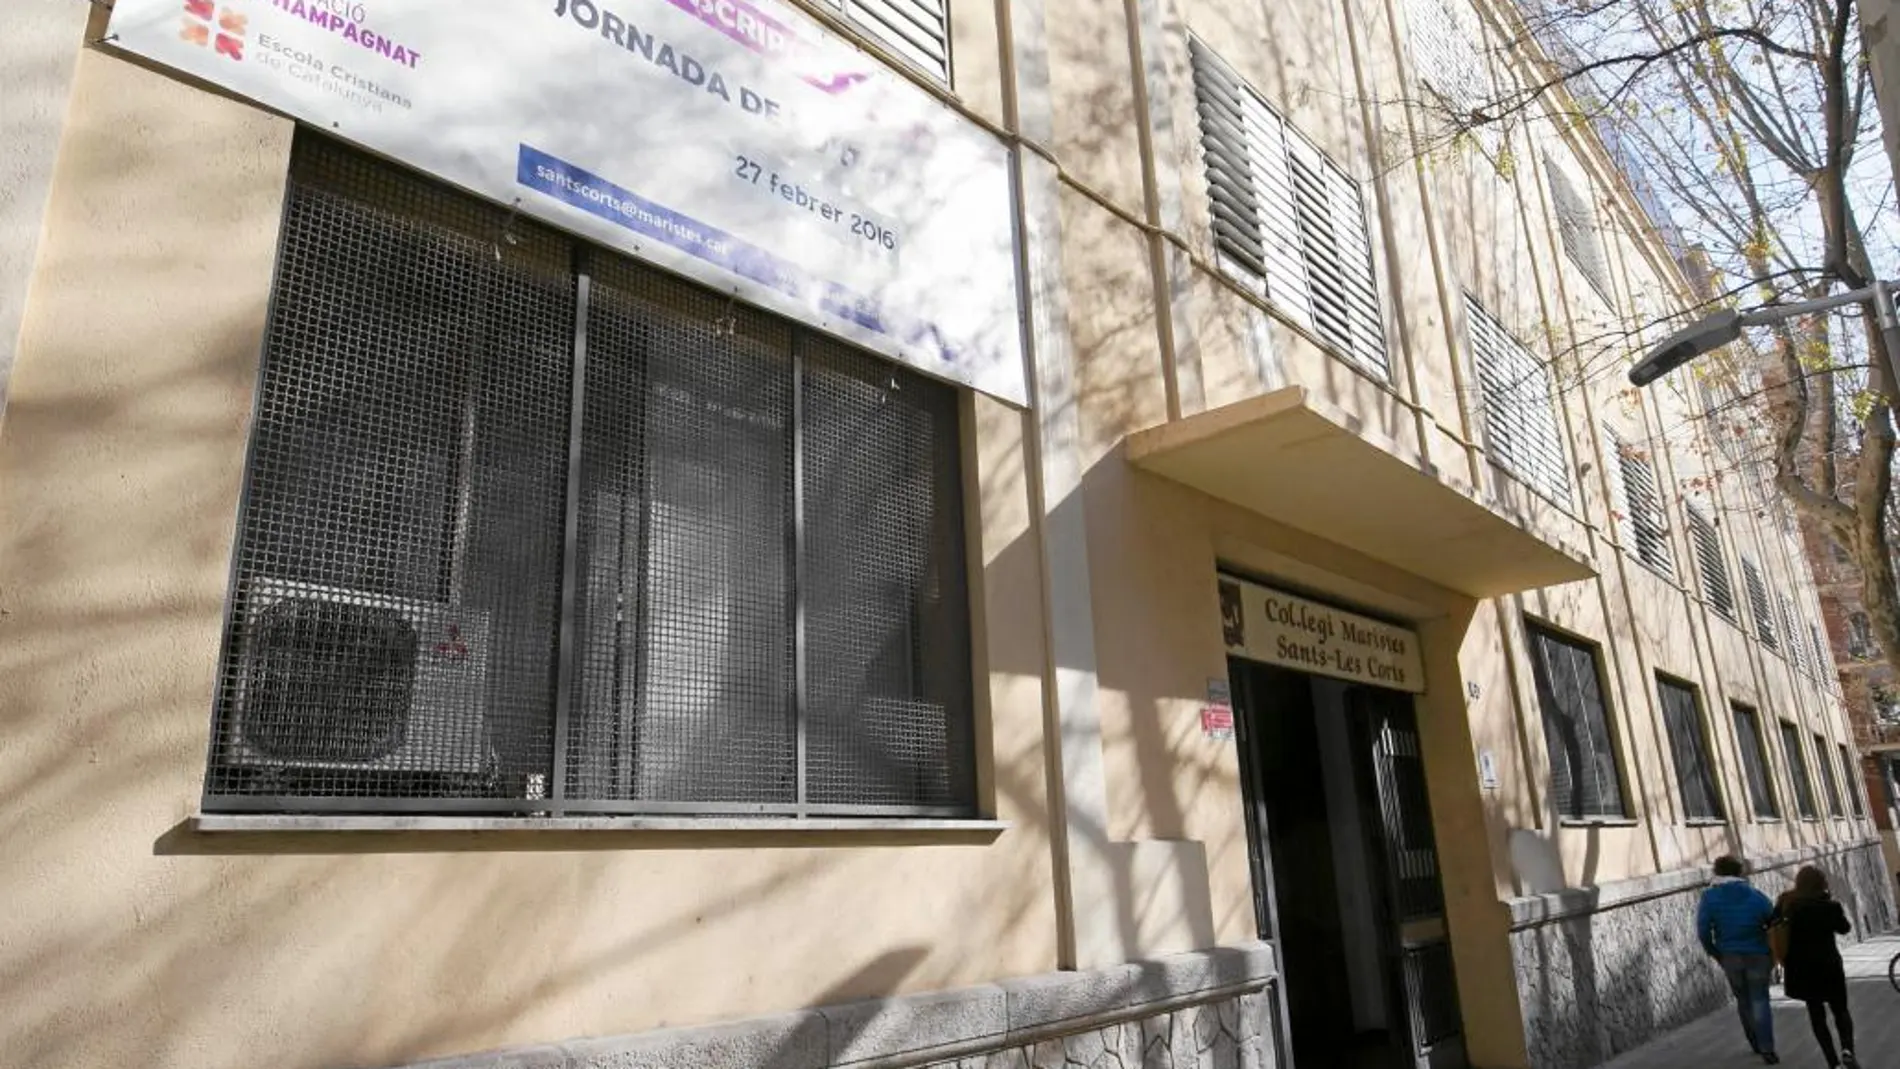 Las denuncias se acumulan contra el centro de Maristas de Les Corts, aunque el colegio defendió su actuación